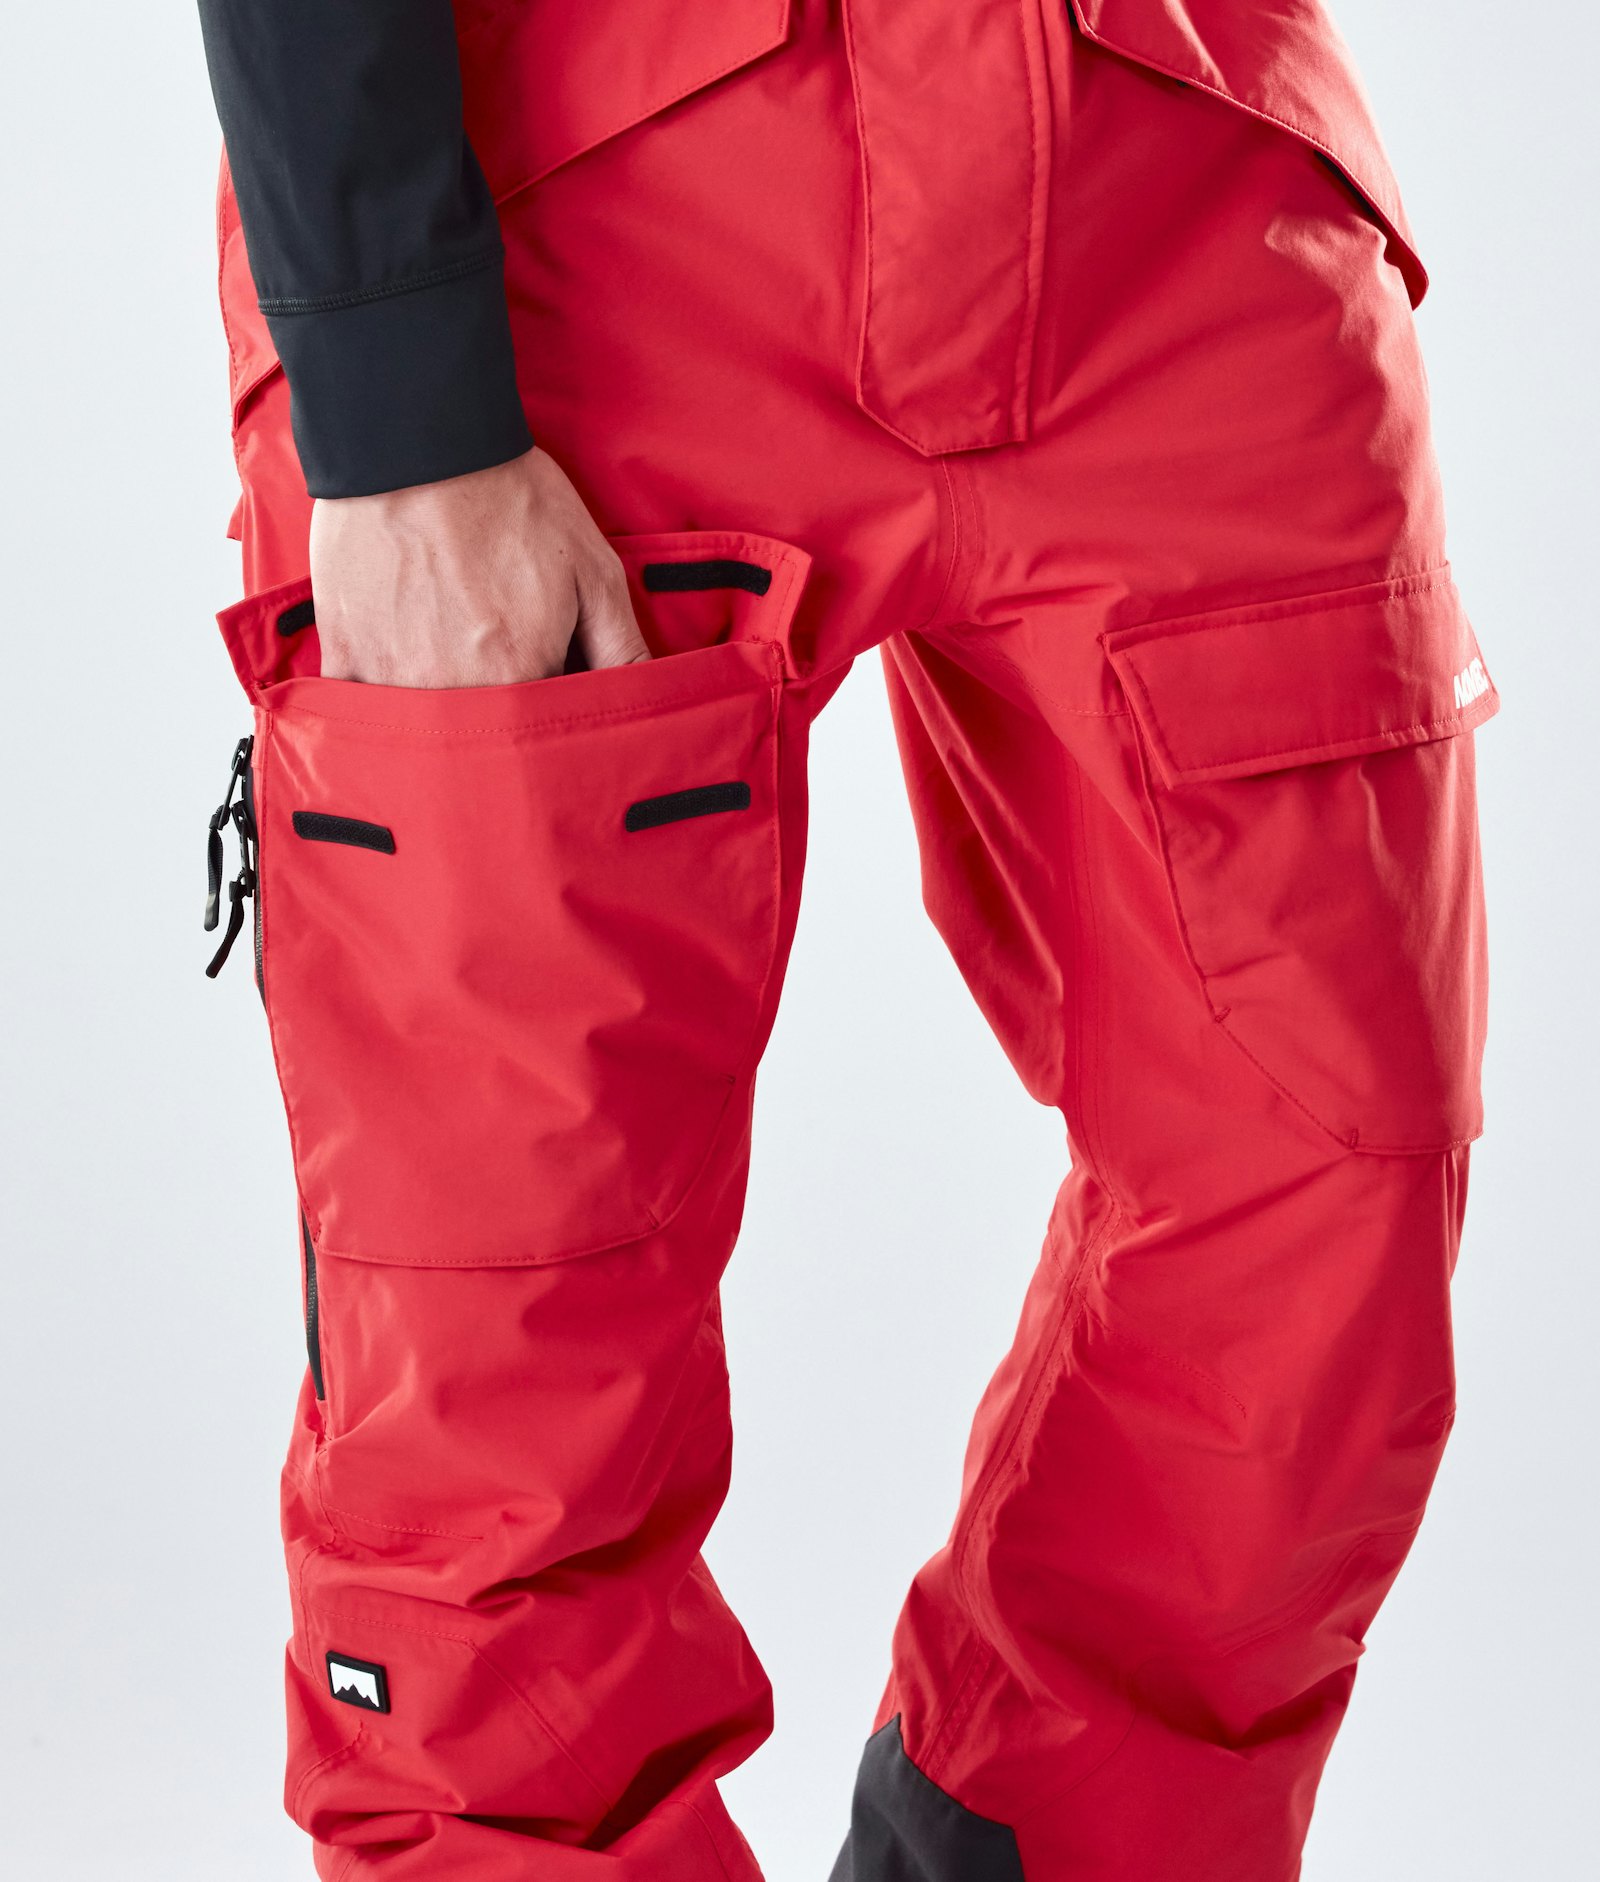 Fawk 2020 Snowboardhose Herren Red